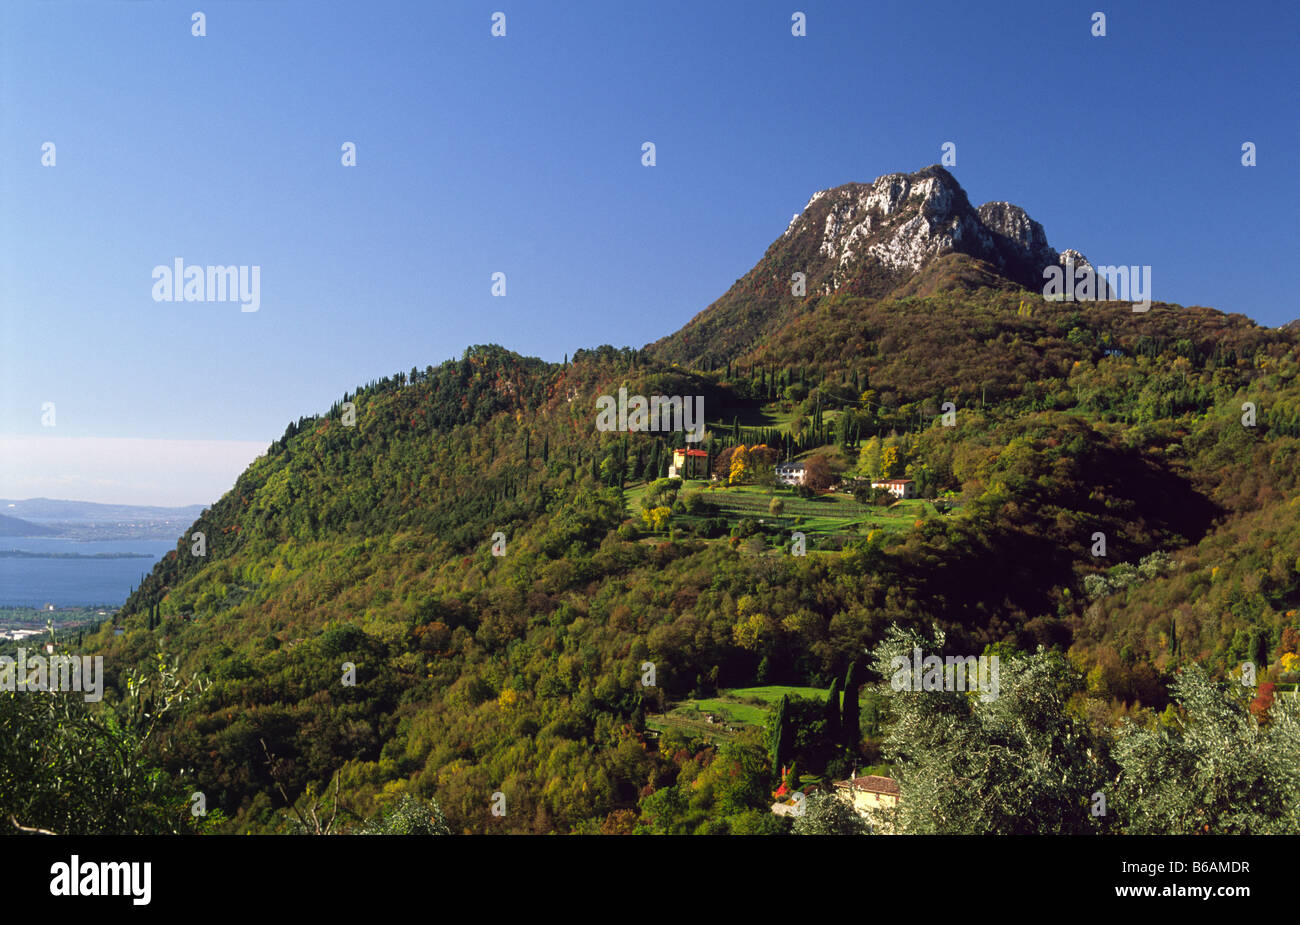 Monte Castello di Gaino near Navazzo, Brescia, Lombardy, Italy. Stock Photo